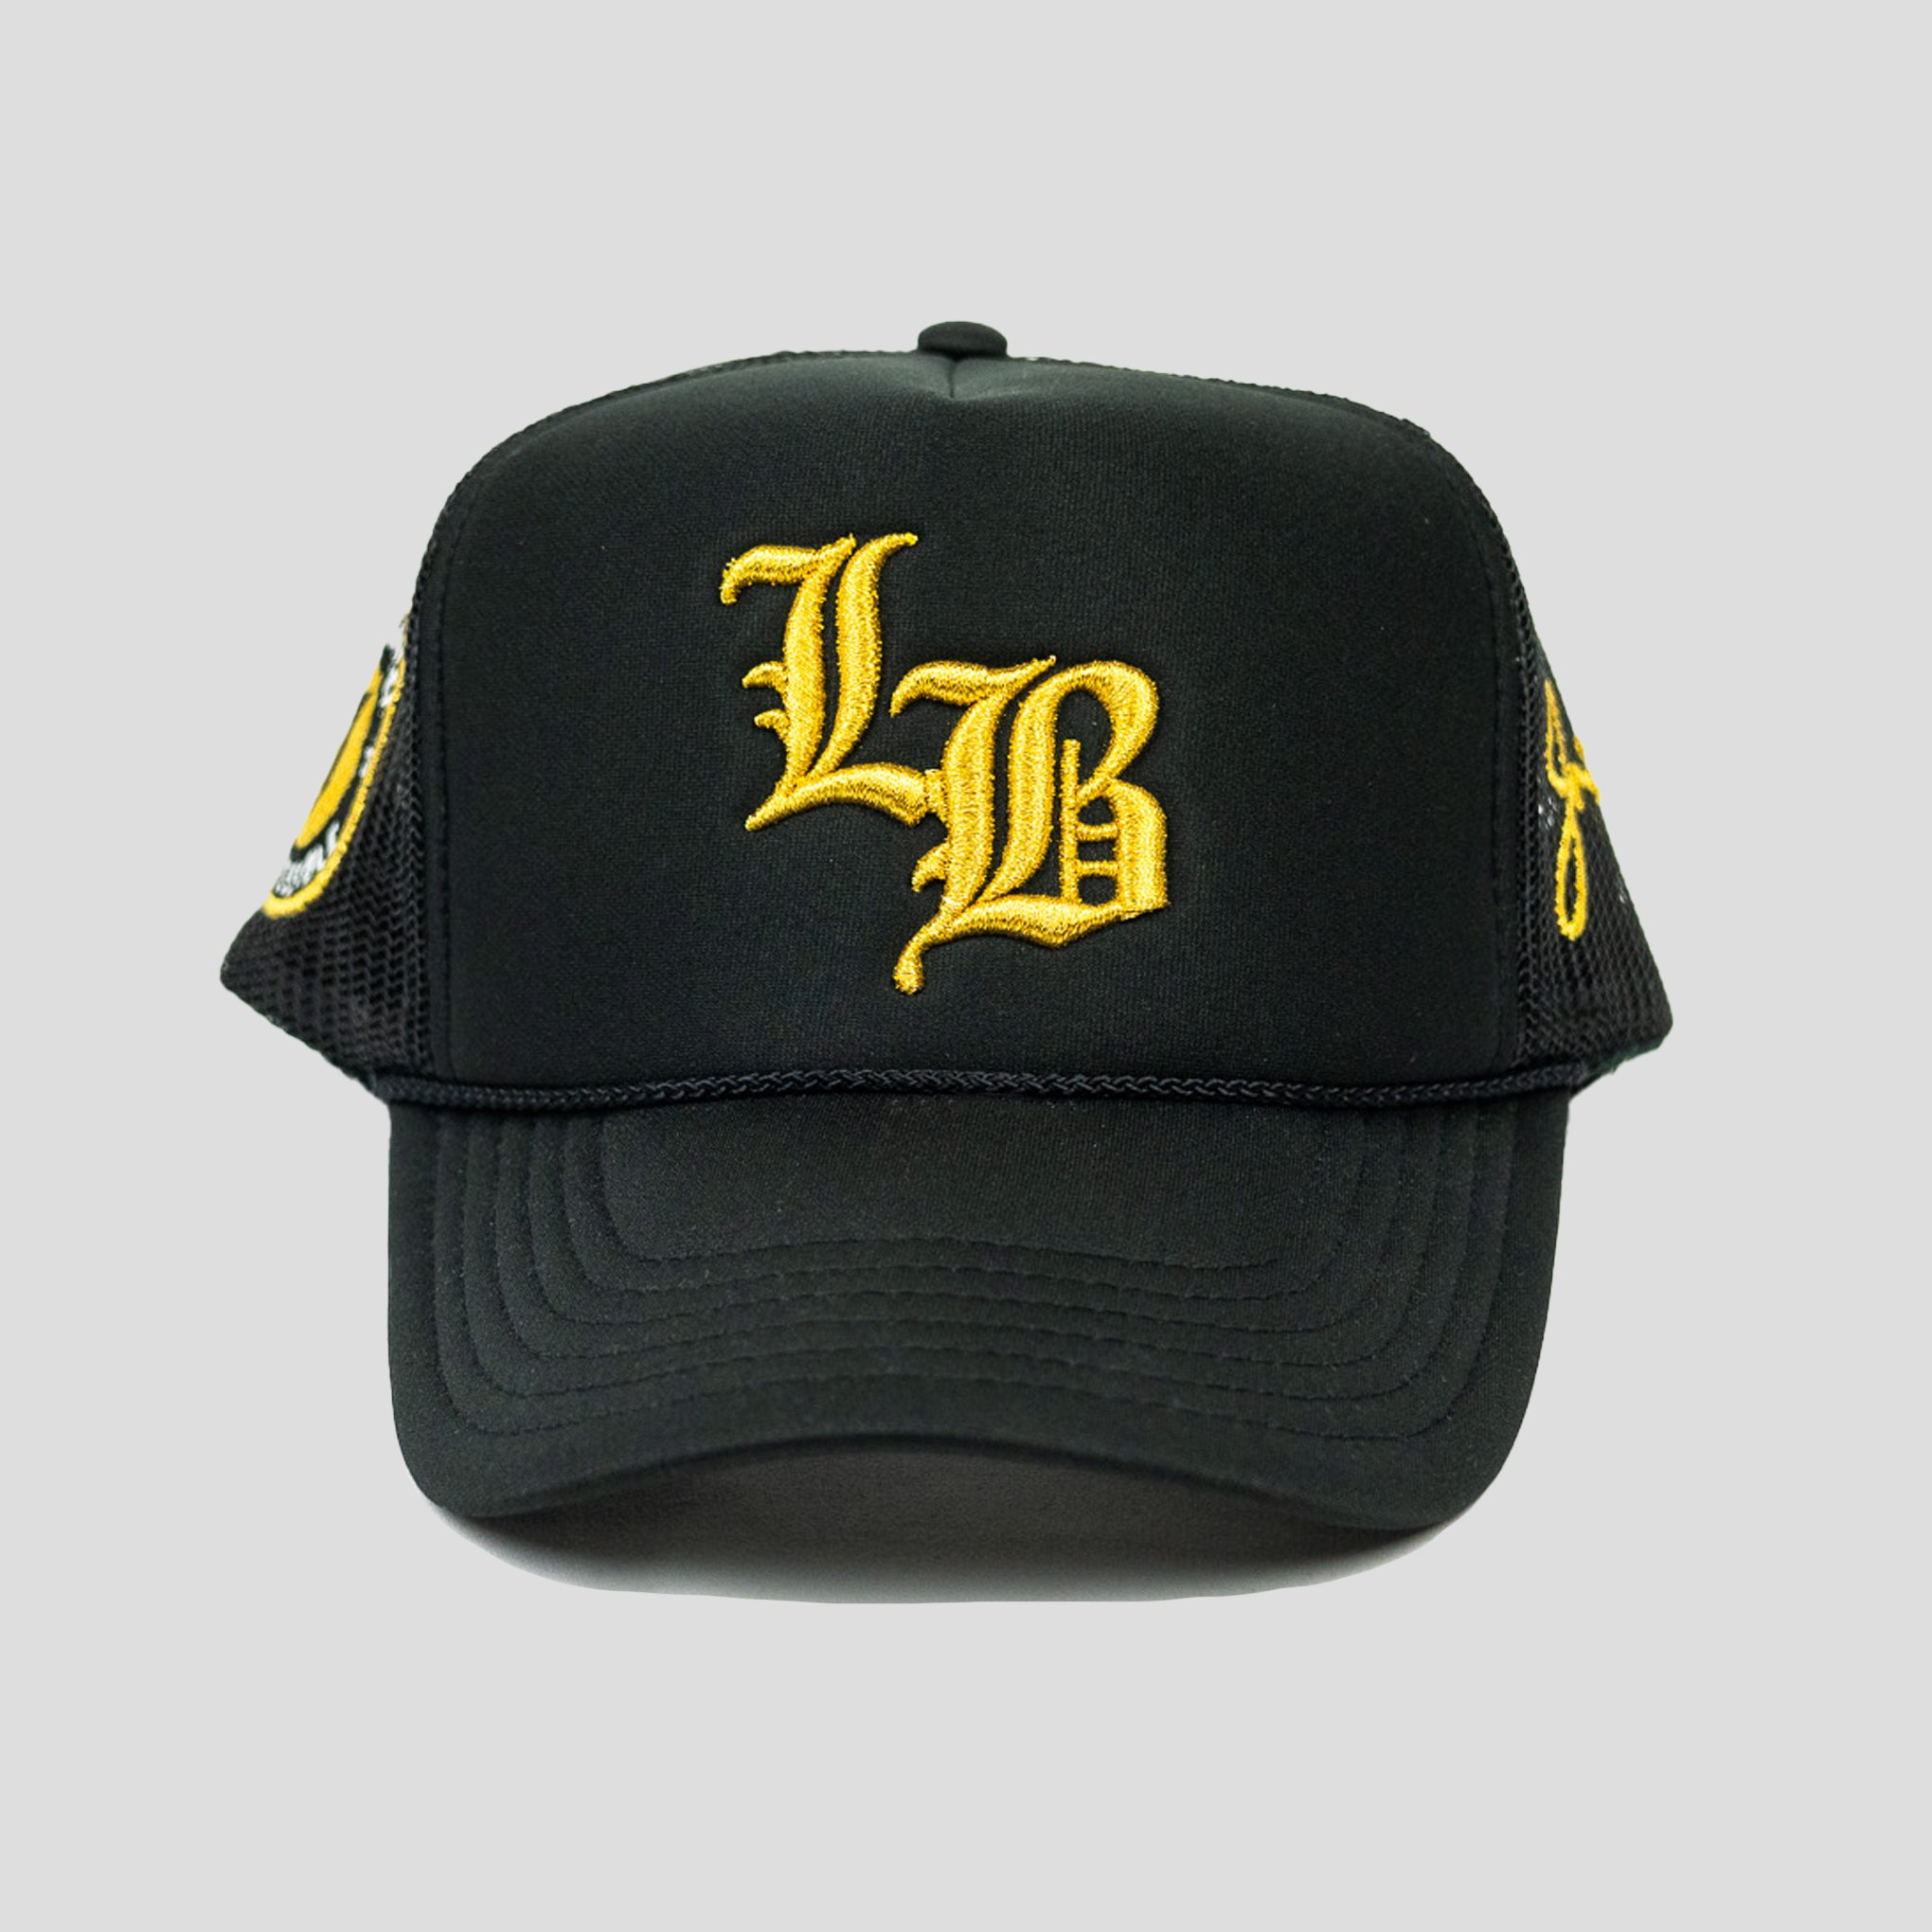 Jrip x LB Trucker Hat (BLACK/GOLD)